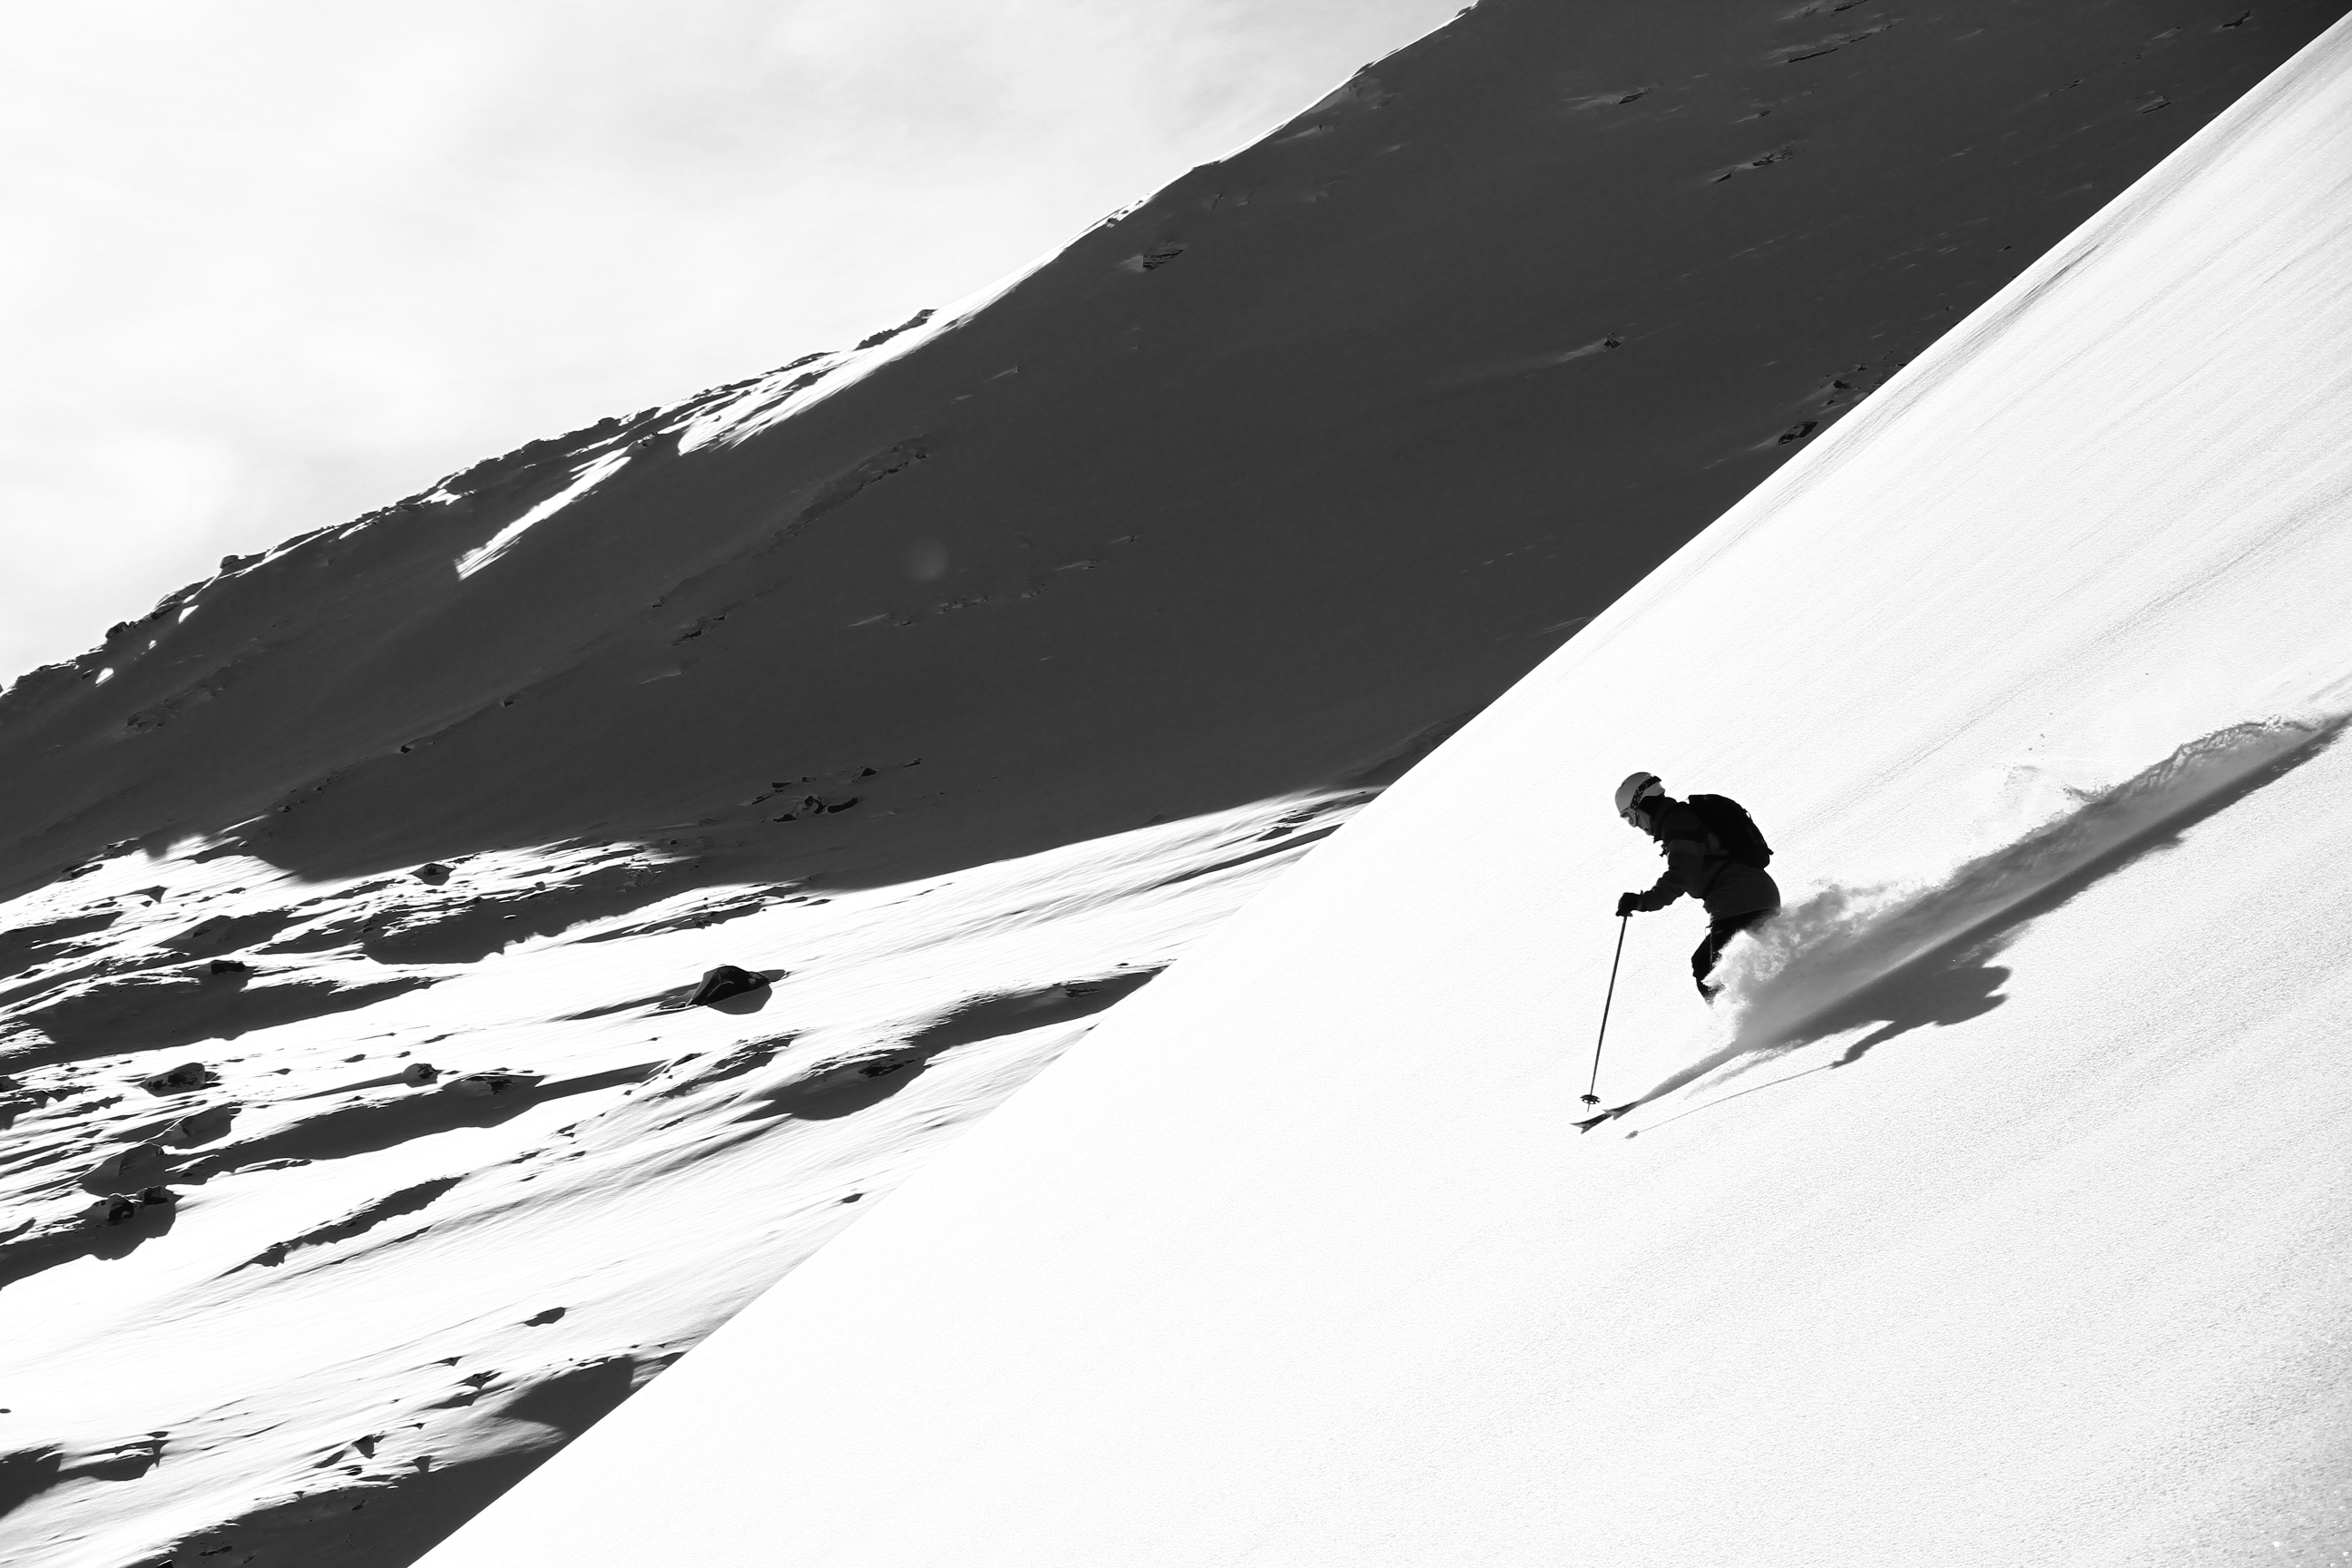  Skifahren auf den Berg Vassitjokka. Mrz 2012. Photo: Andreas Bengtsson